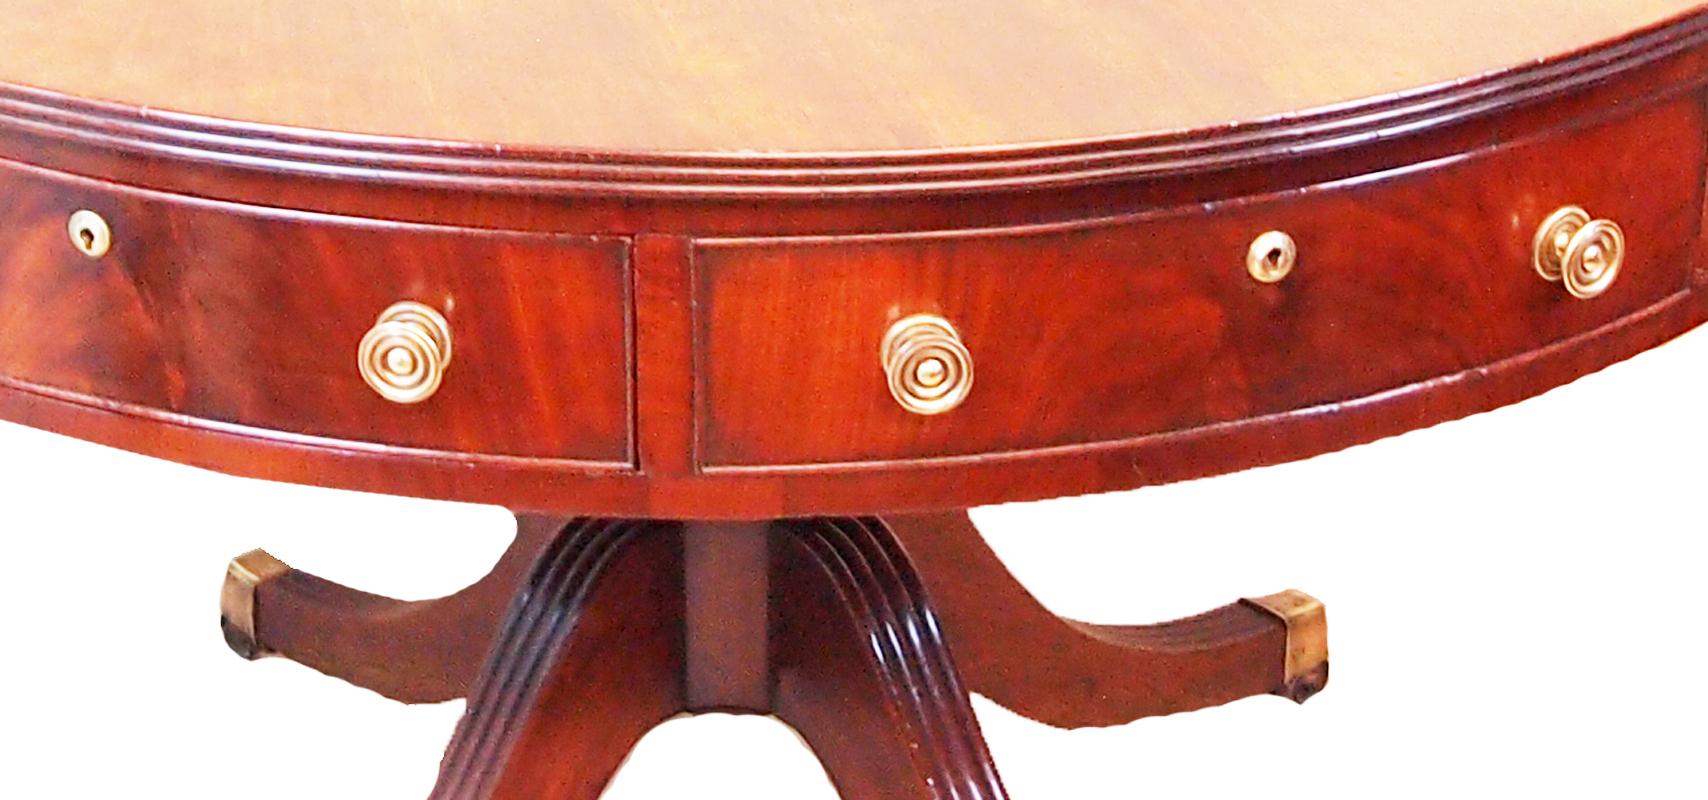 antique drum table